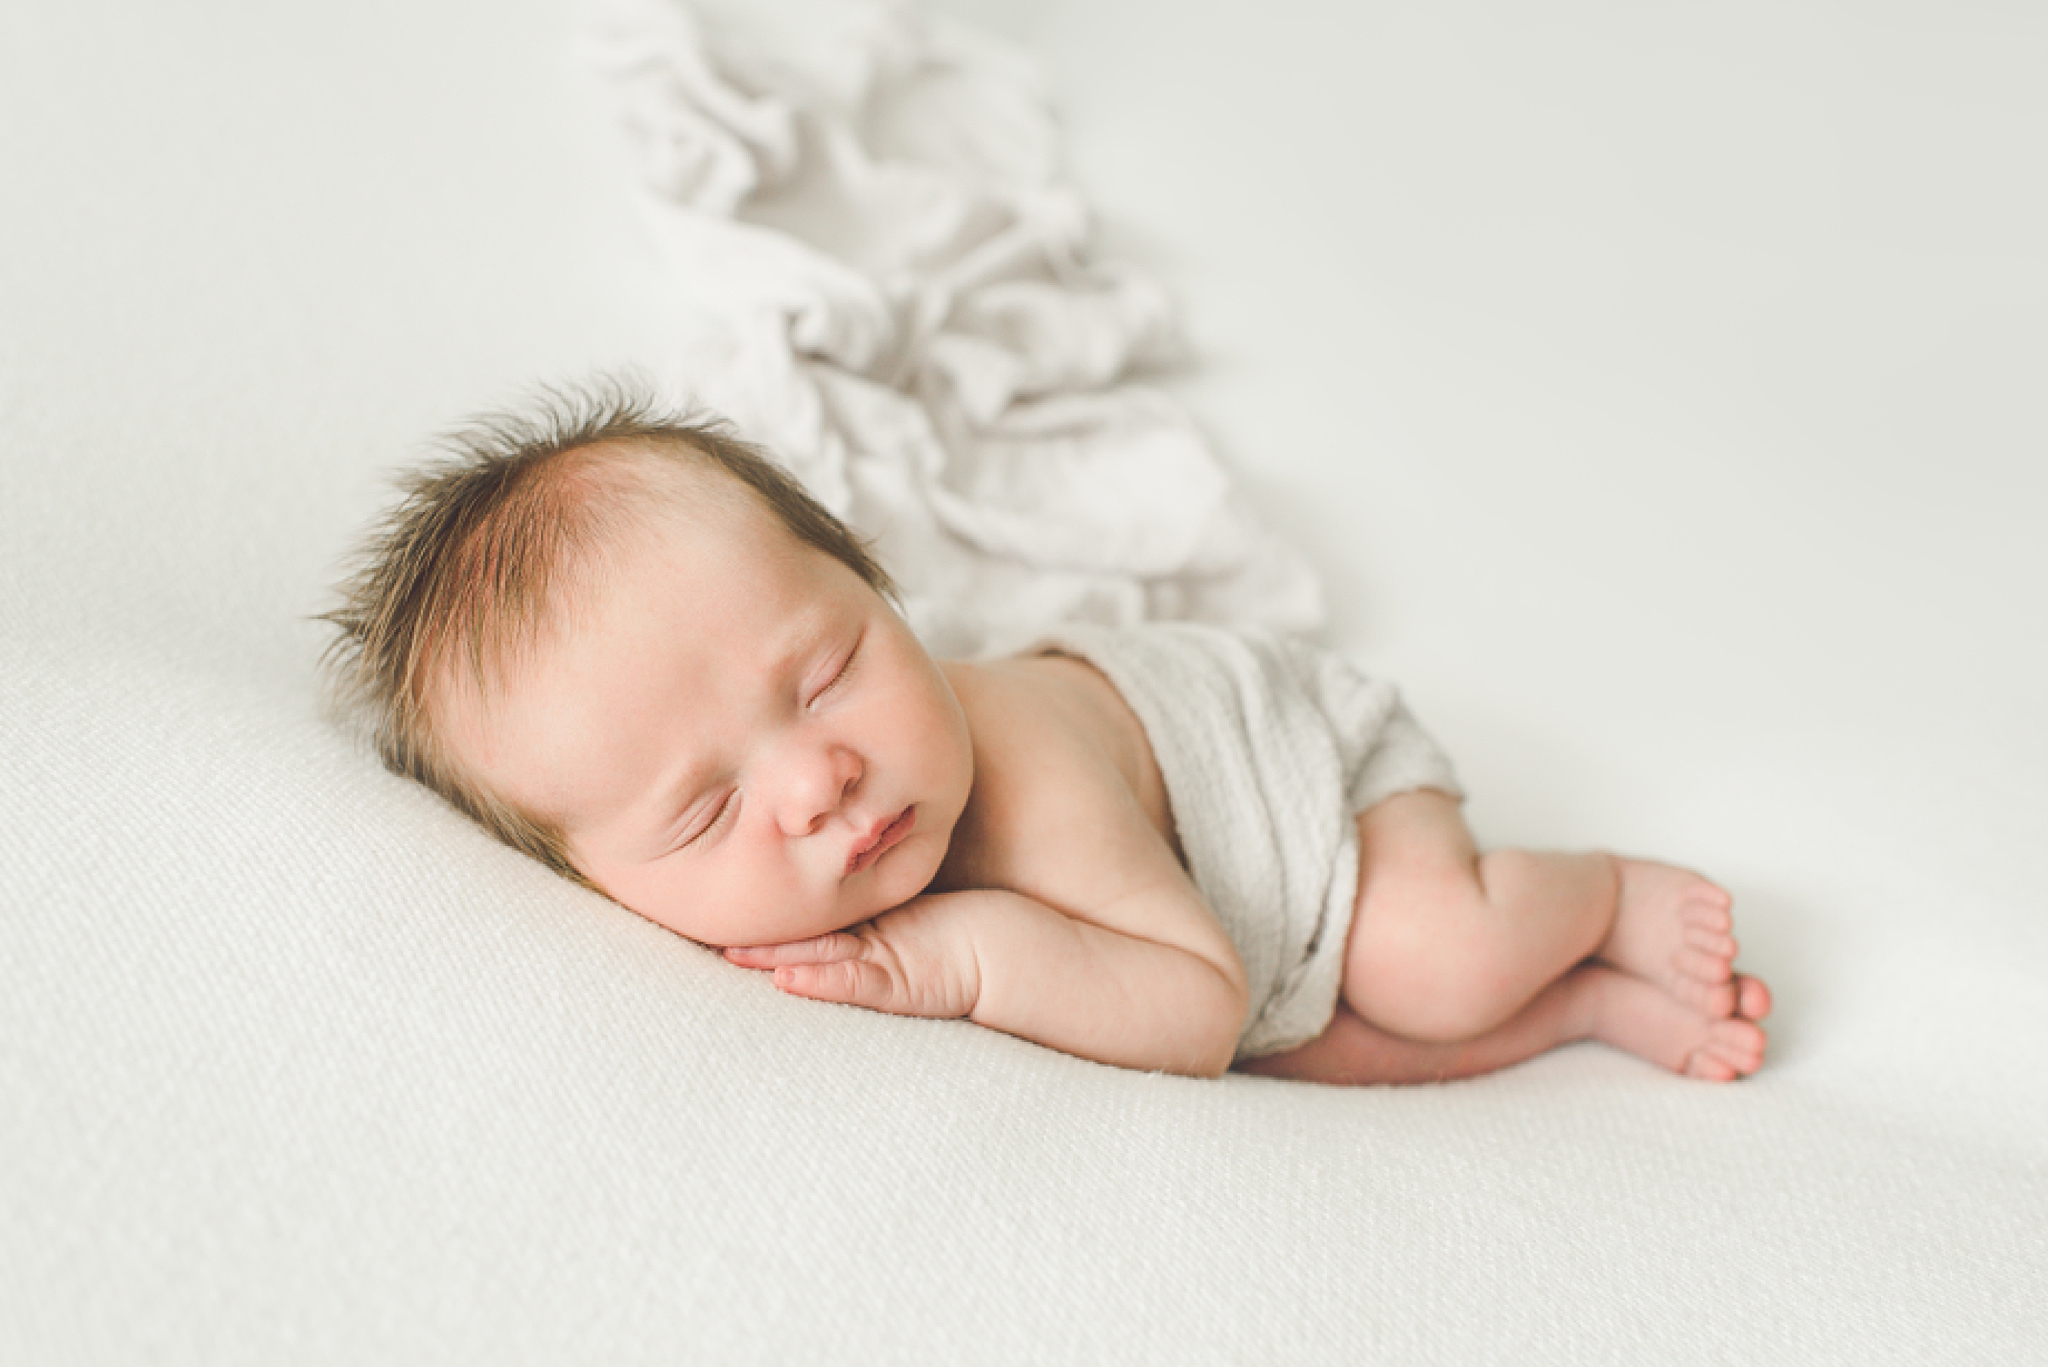 Springboro Ohio Newborn Photographer | Baby Asher